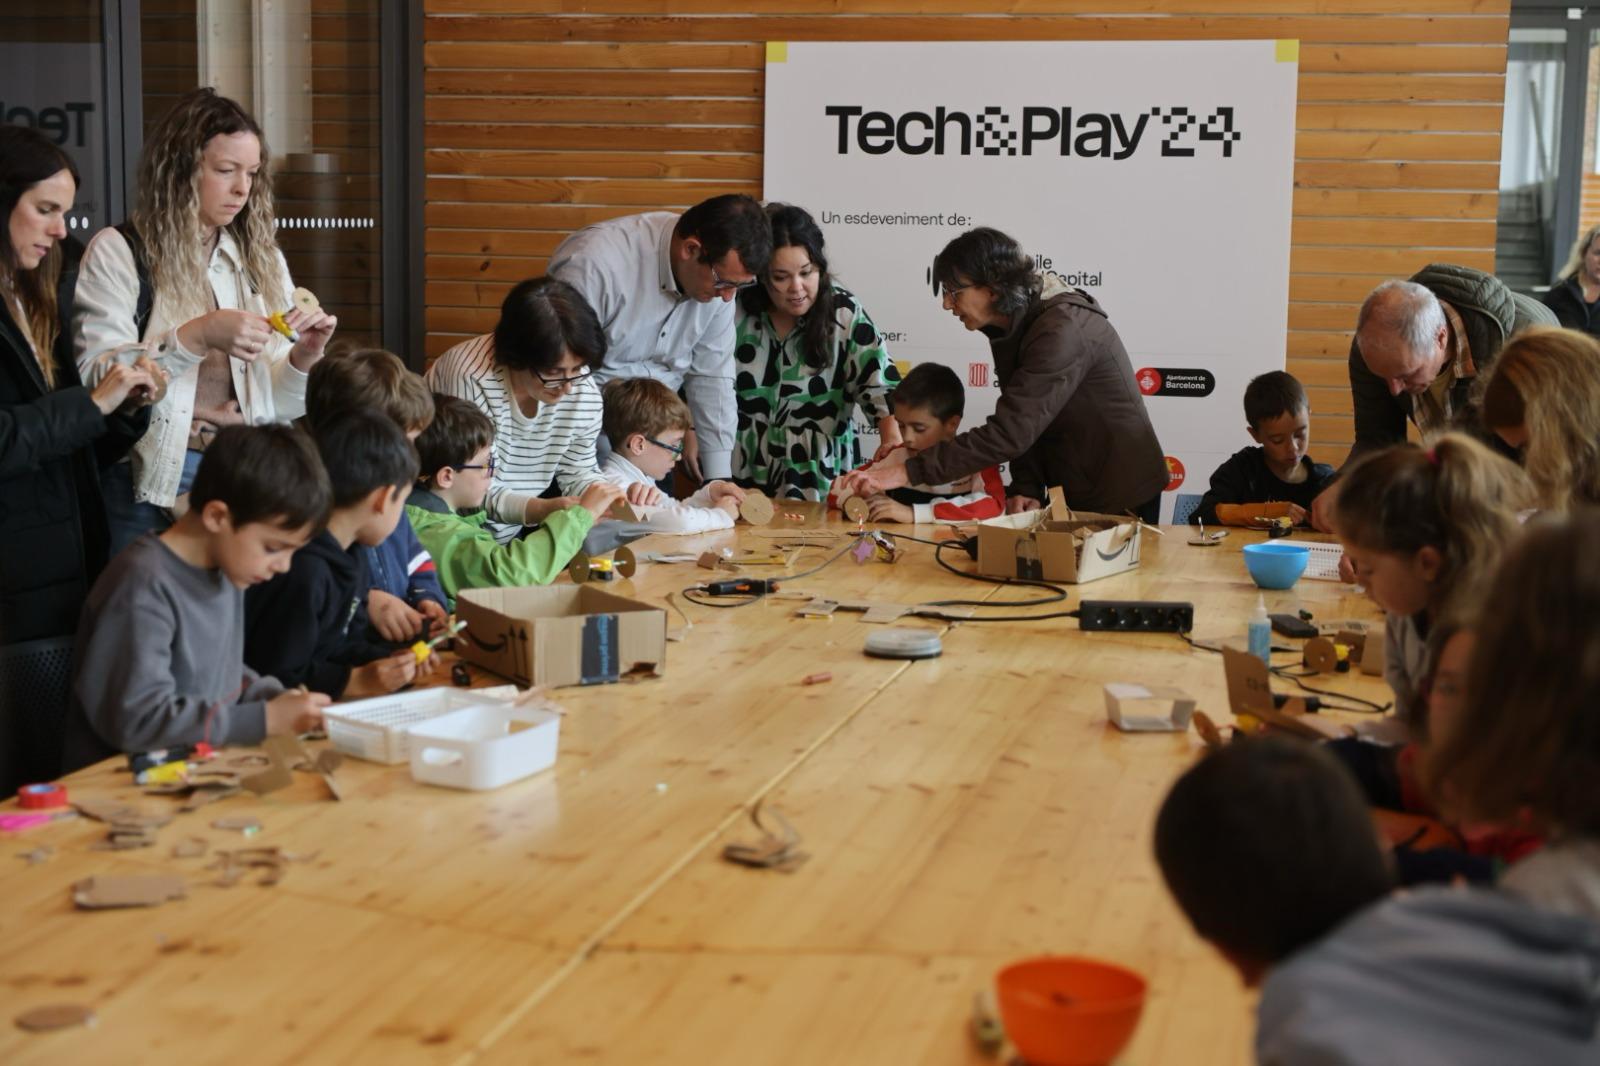 El festival Tech&Play culmina quatre dies d’activitats amb una jornada especial per acostar la tecnologia als infants